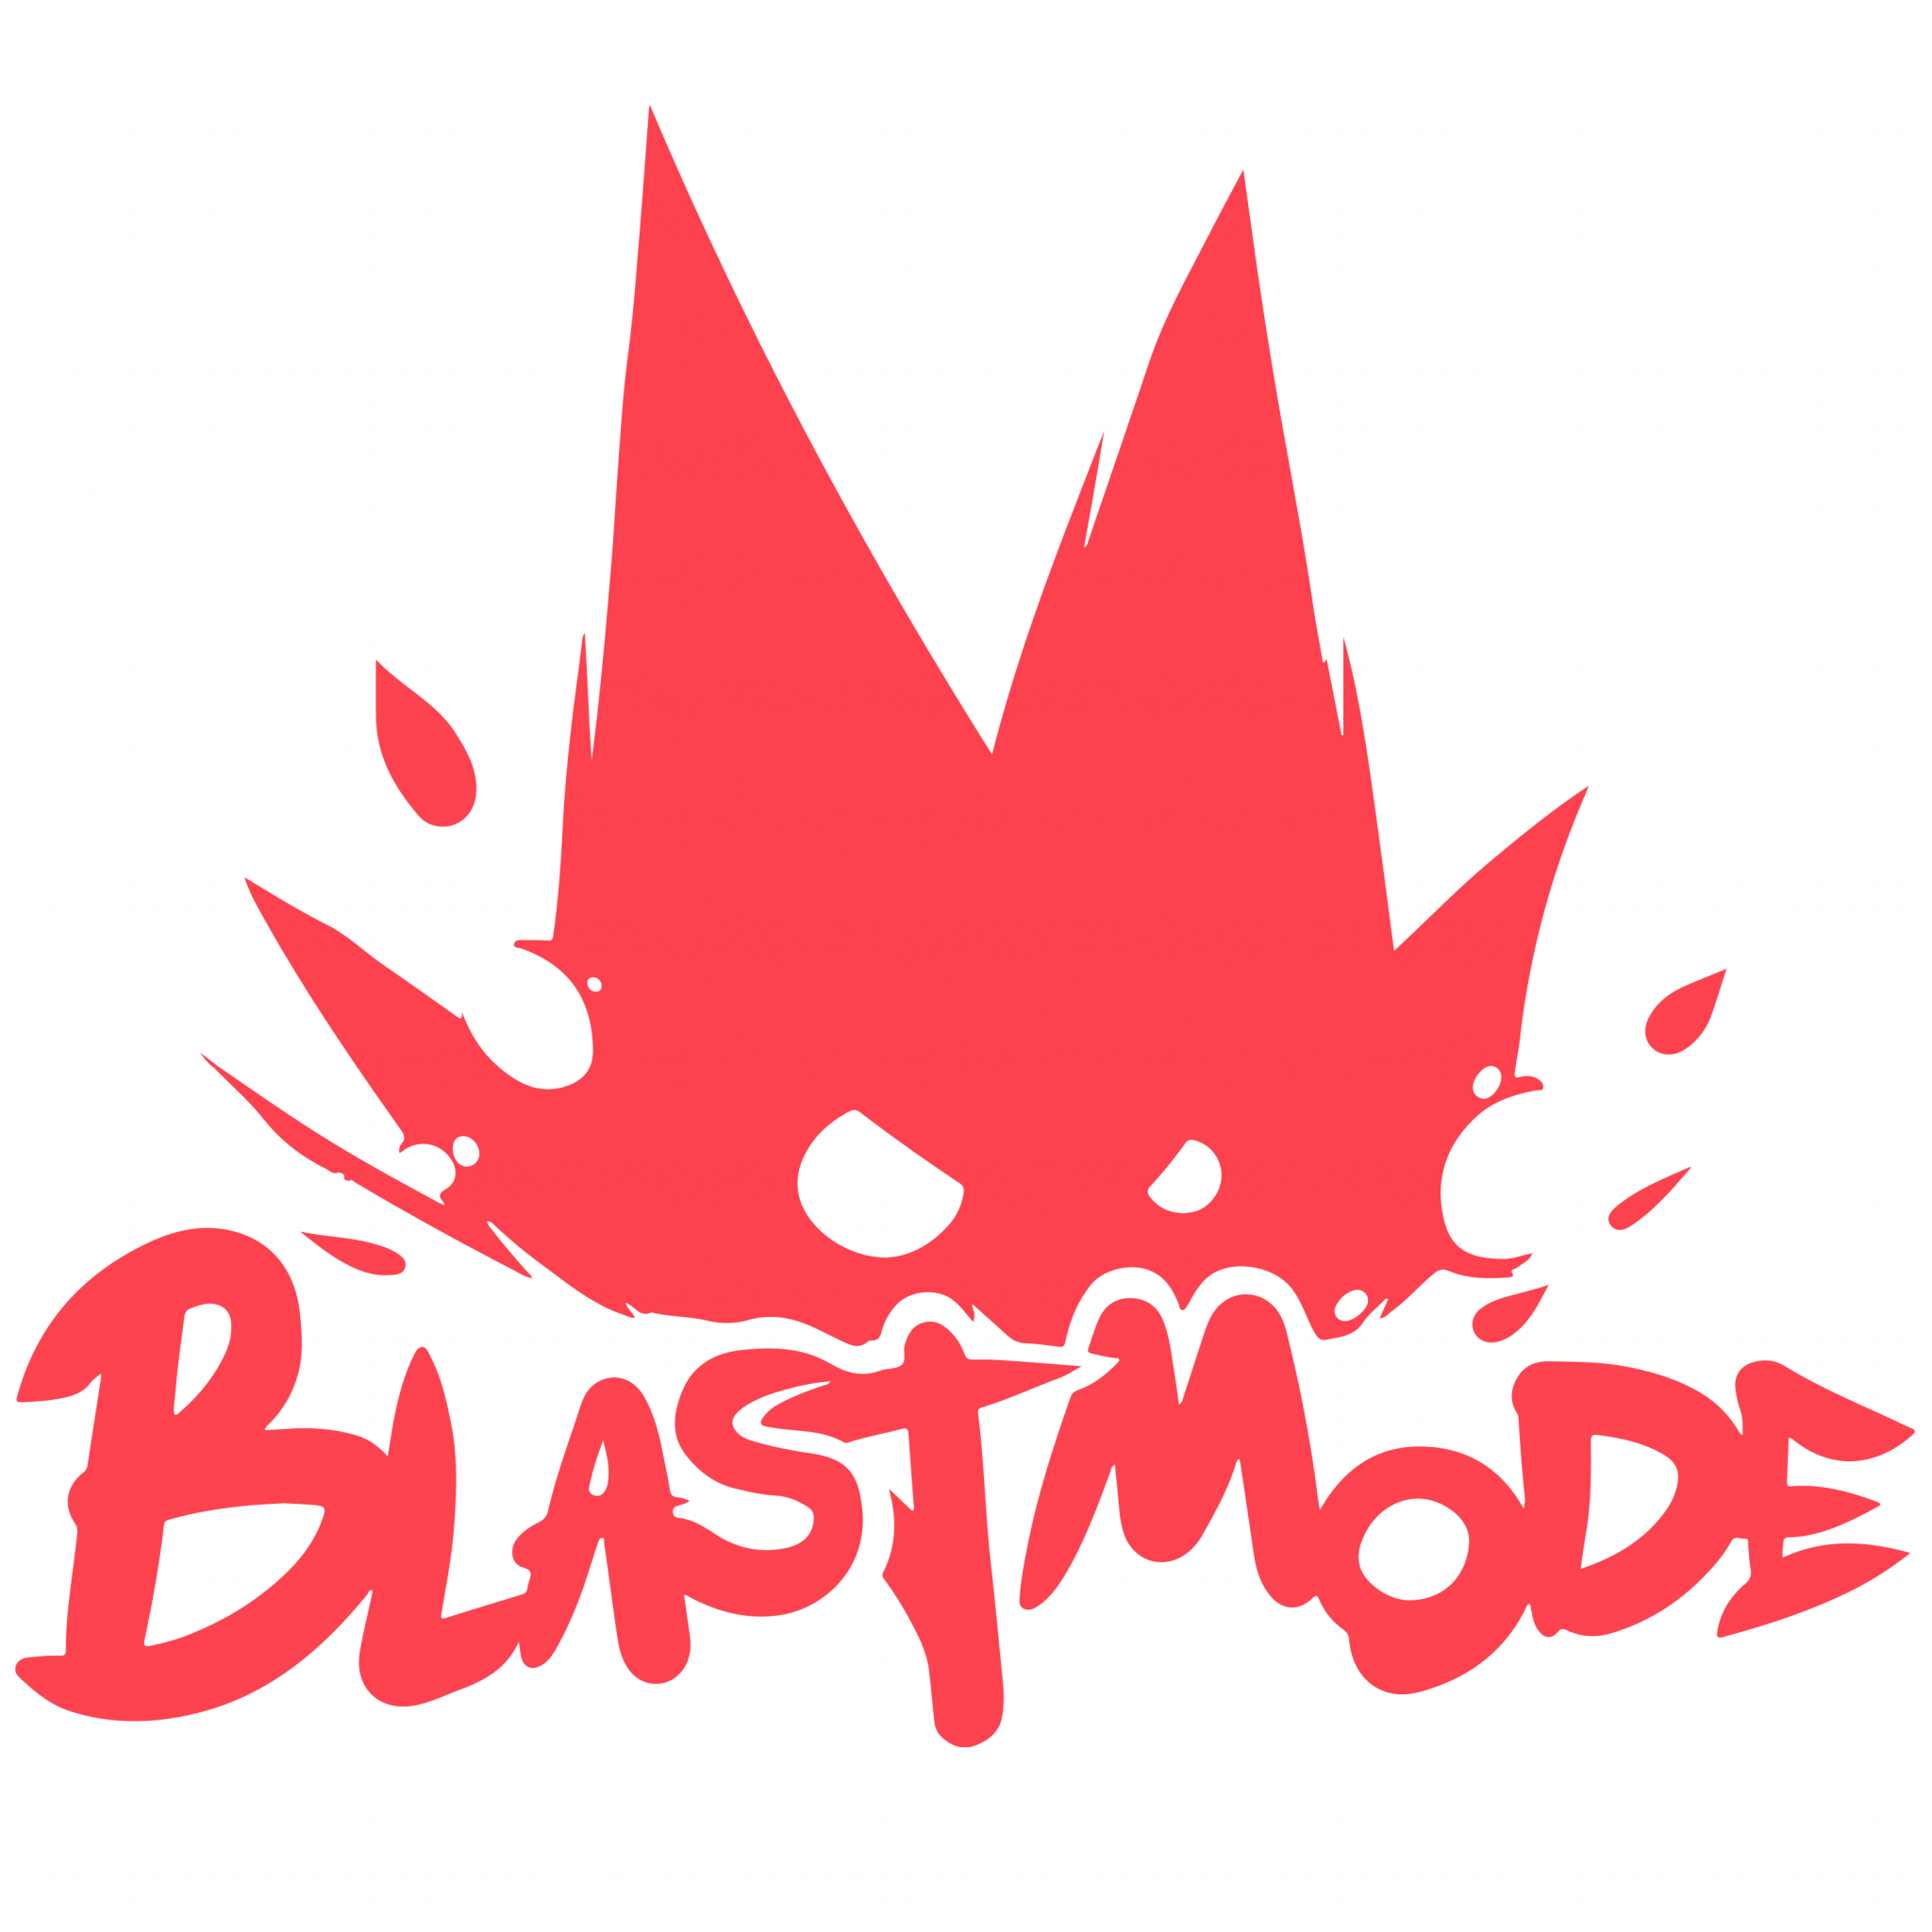 Blastmode Games